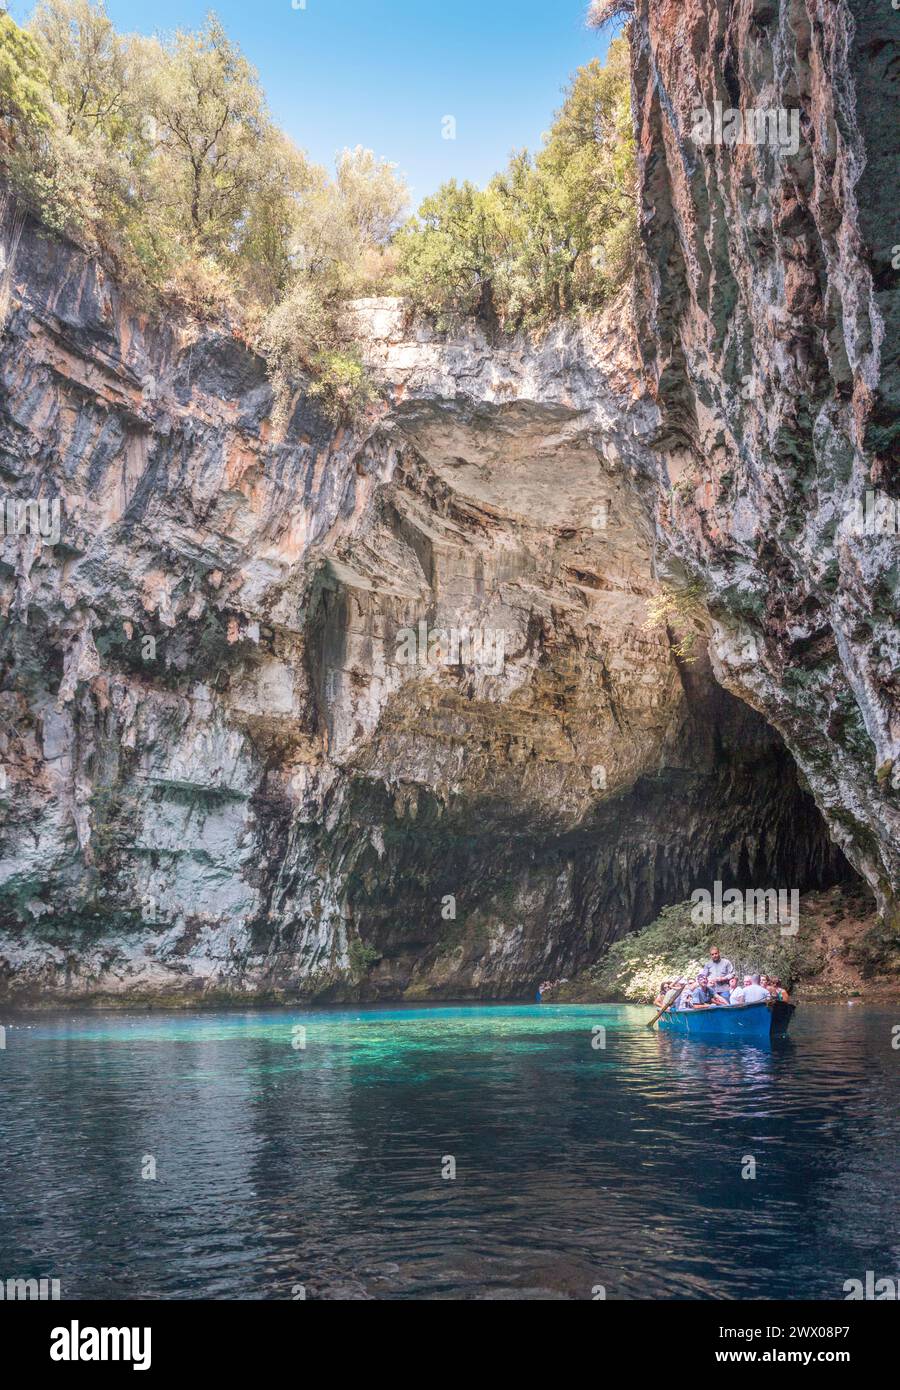 La barca turistica naviga intorno alla grotta Melissani sull'isola di Cefalonia Foto Stock